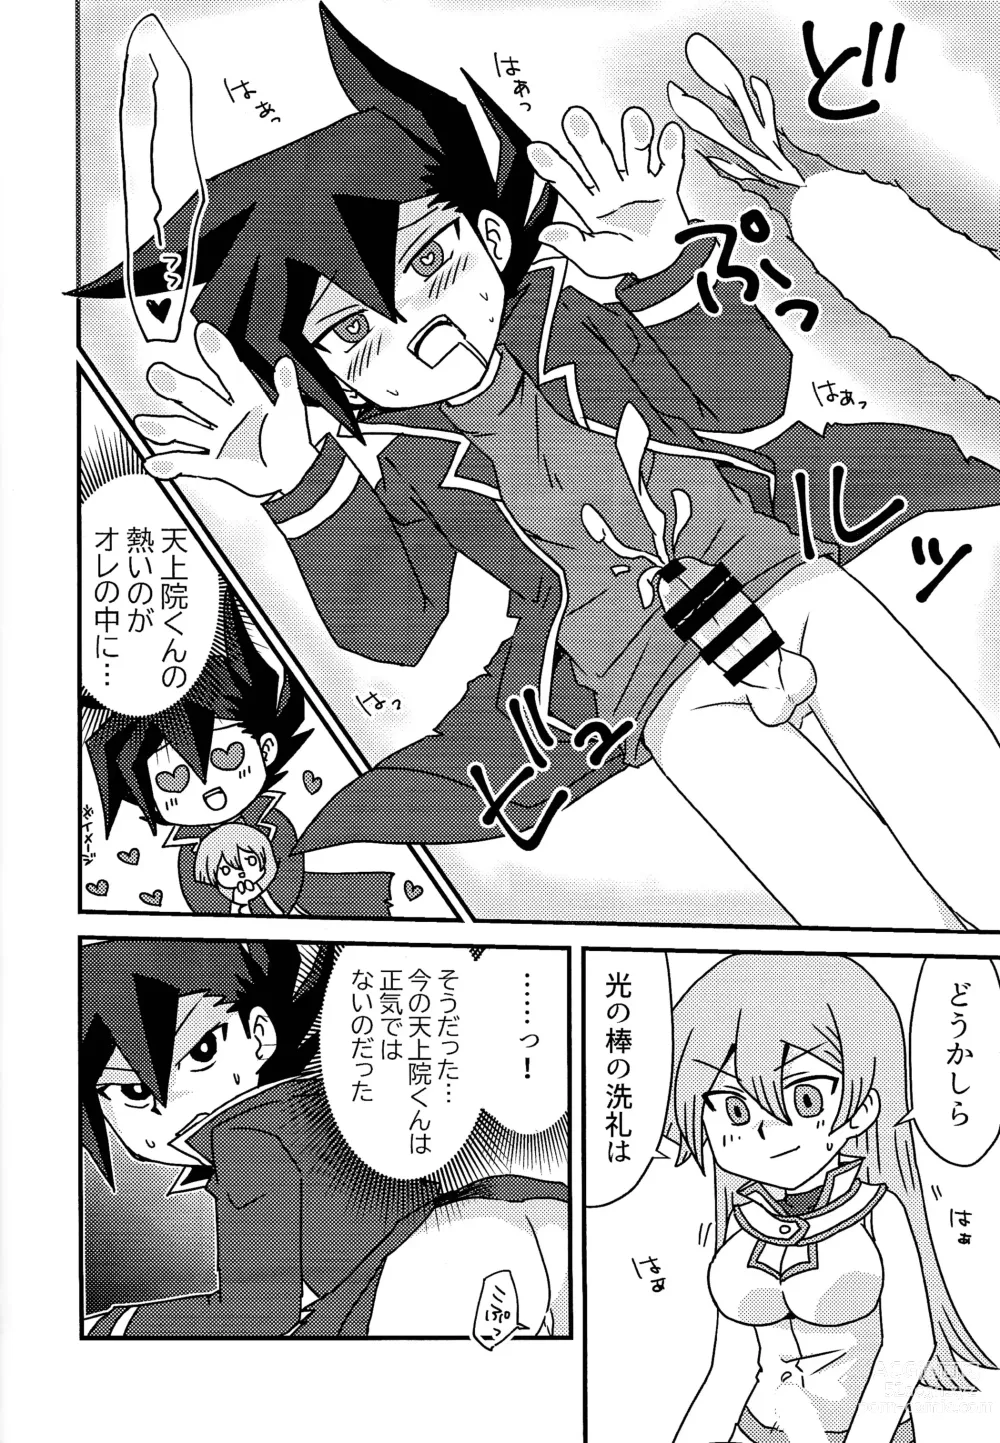 Page 9 of doujinshi Kuro no ore ga mata shiroku some rareyou to shite iru yodaga!?